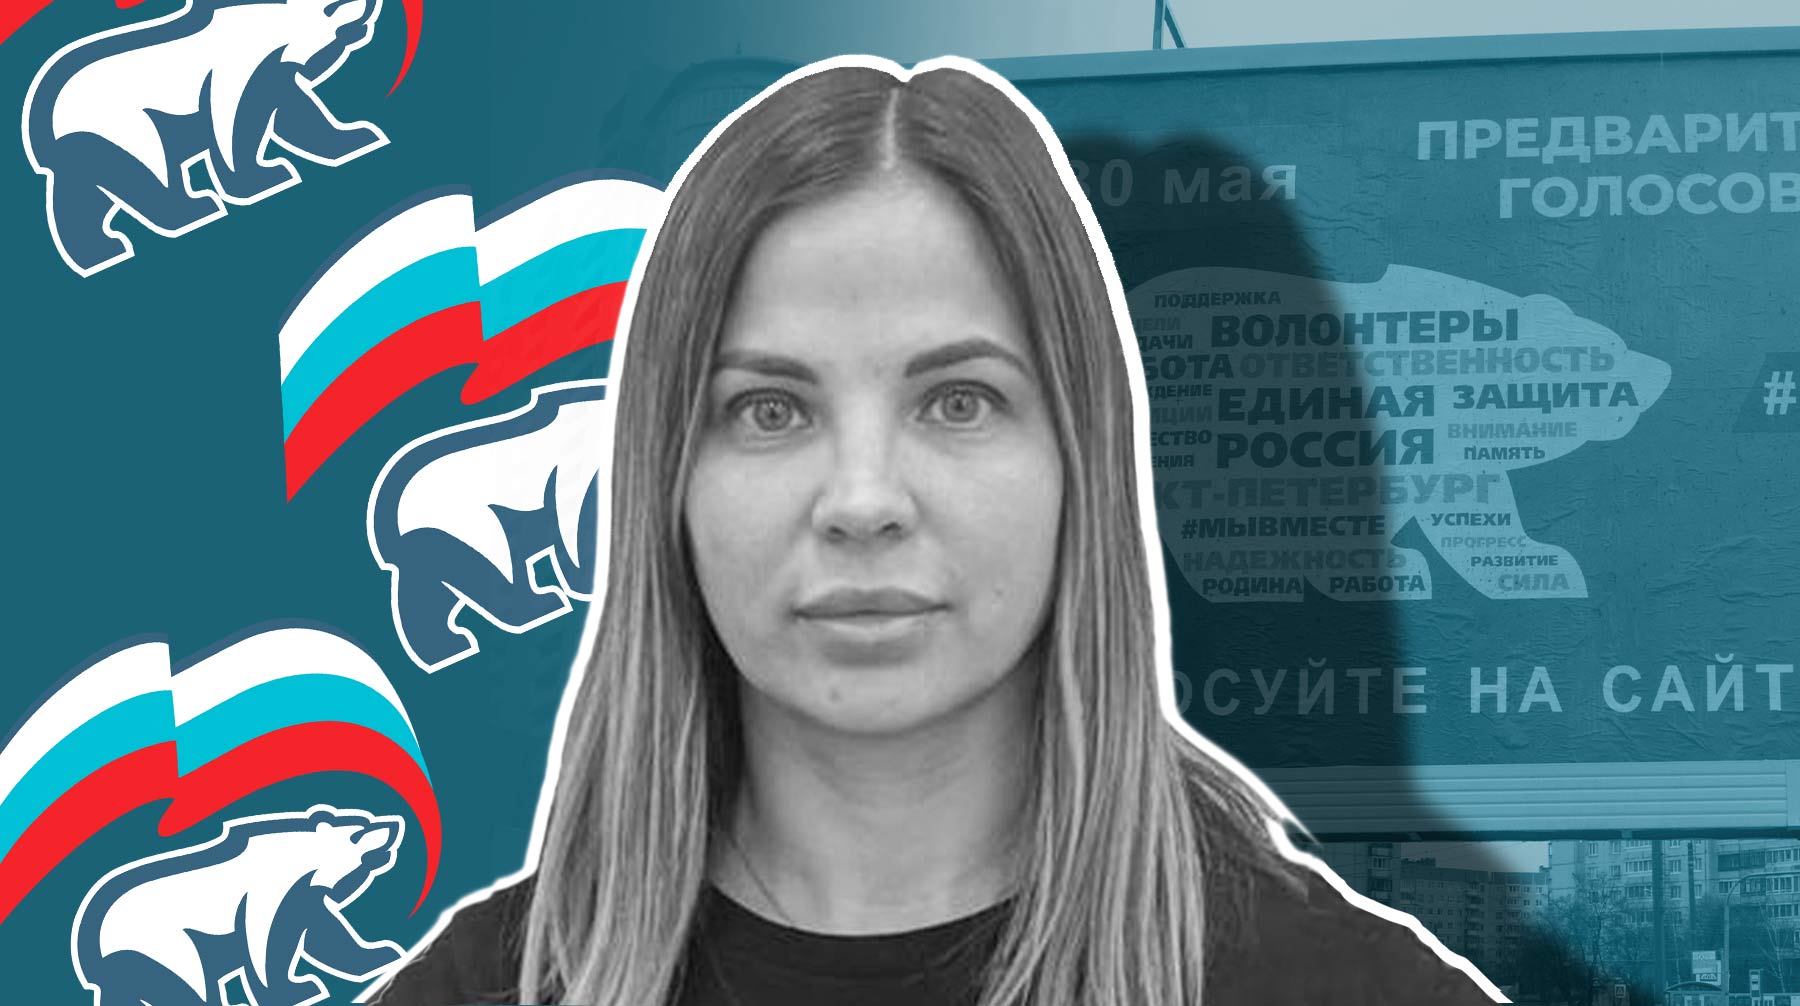 Чиновница из Йошкар-Олы объяснила, почему материлась в своем видеоролике для праймериз «Единой России»